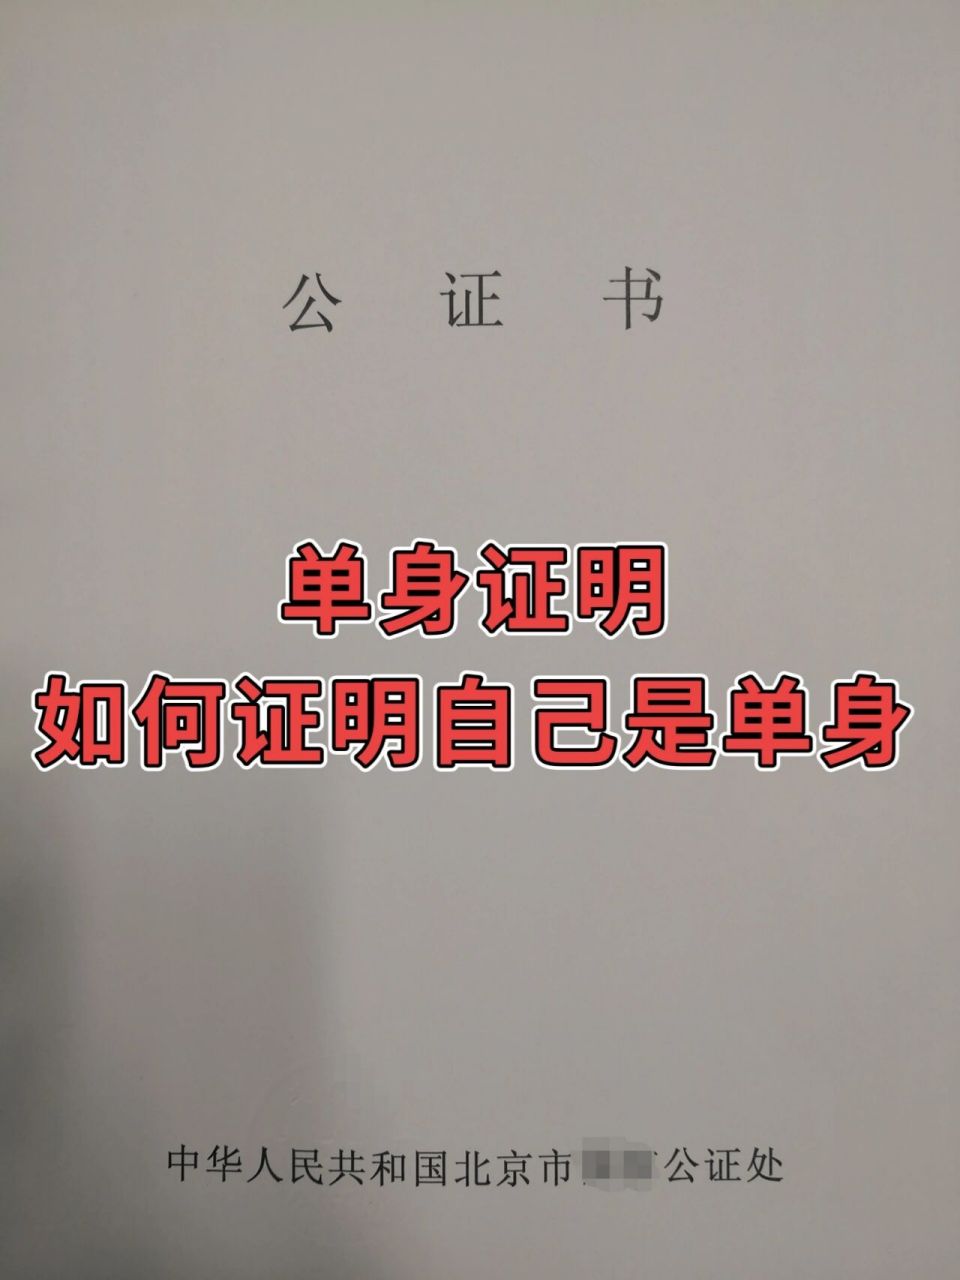 香港单身证明公证图片